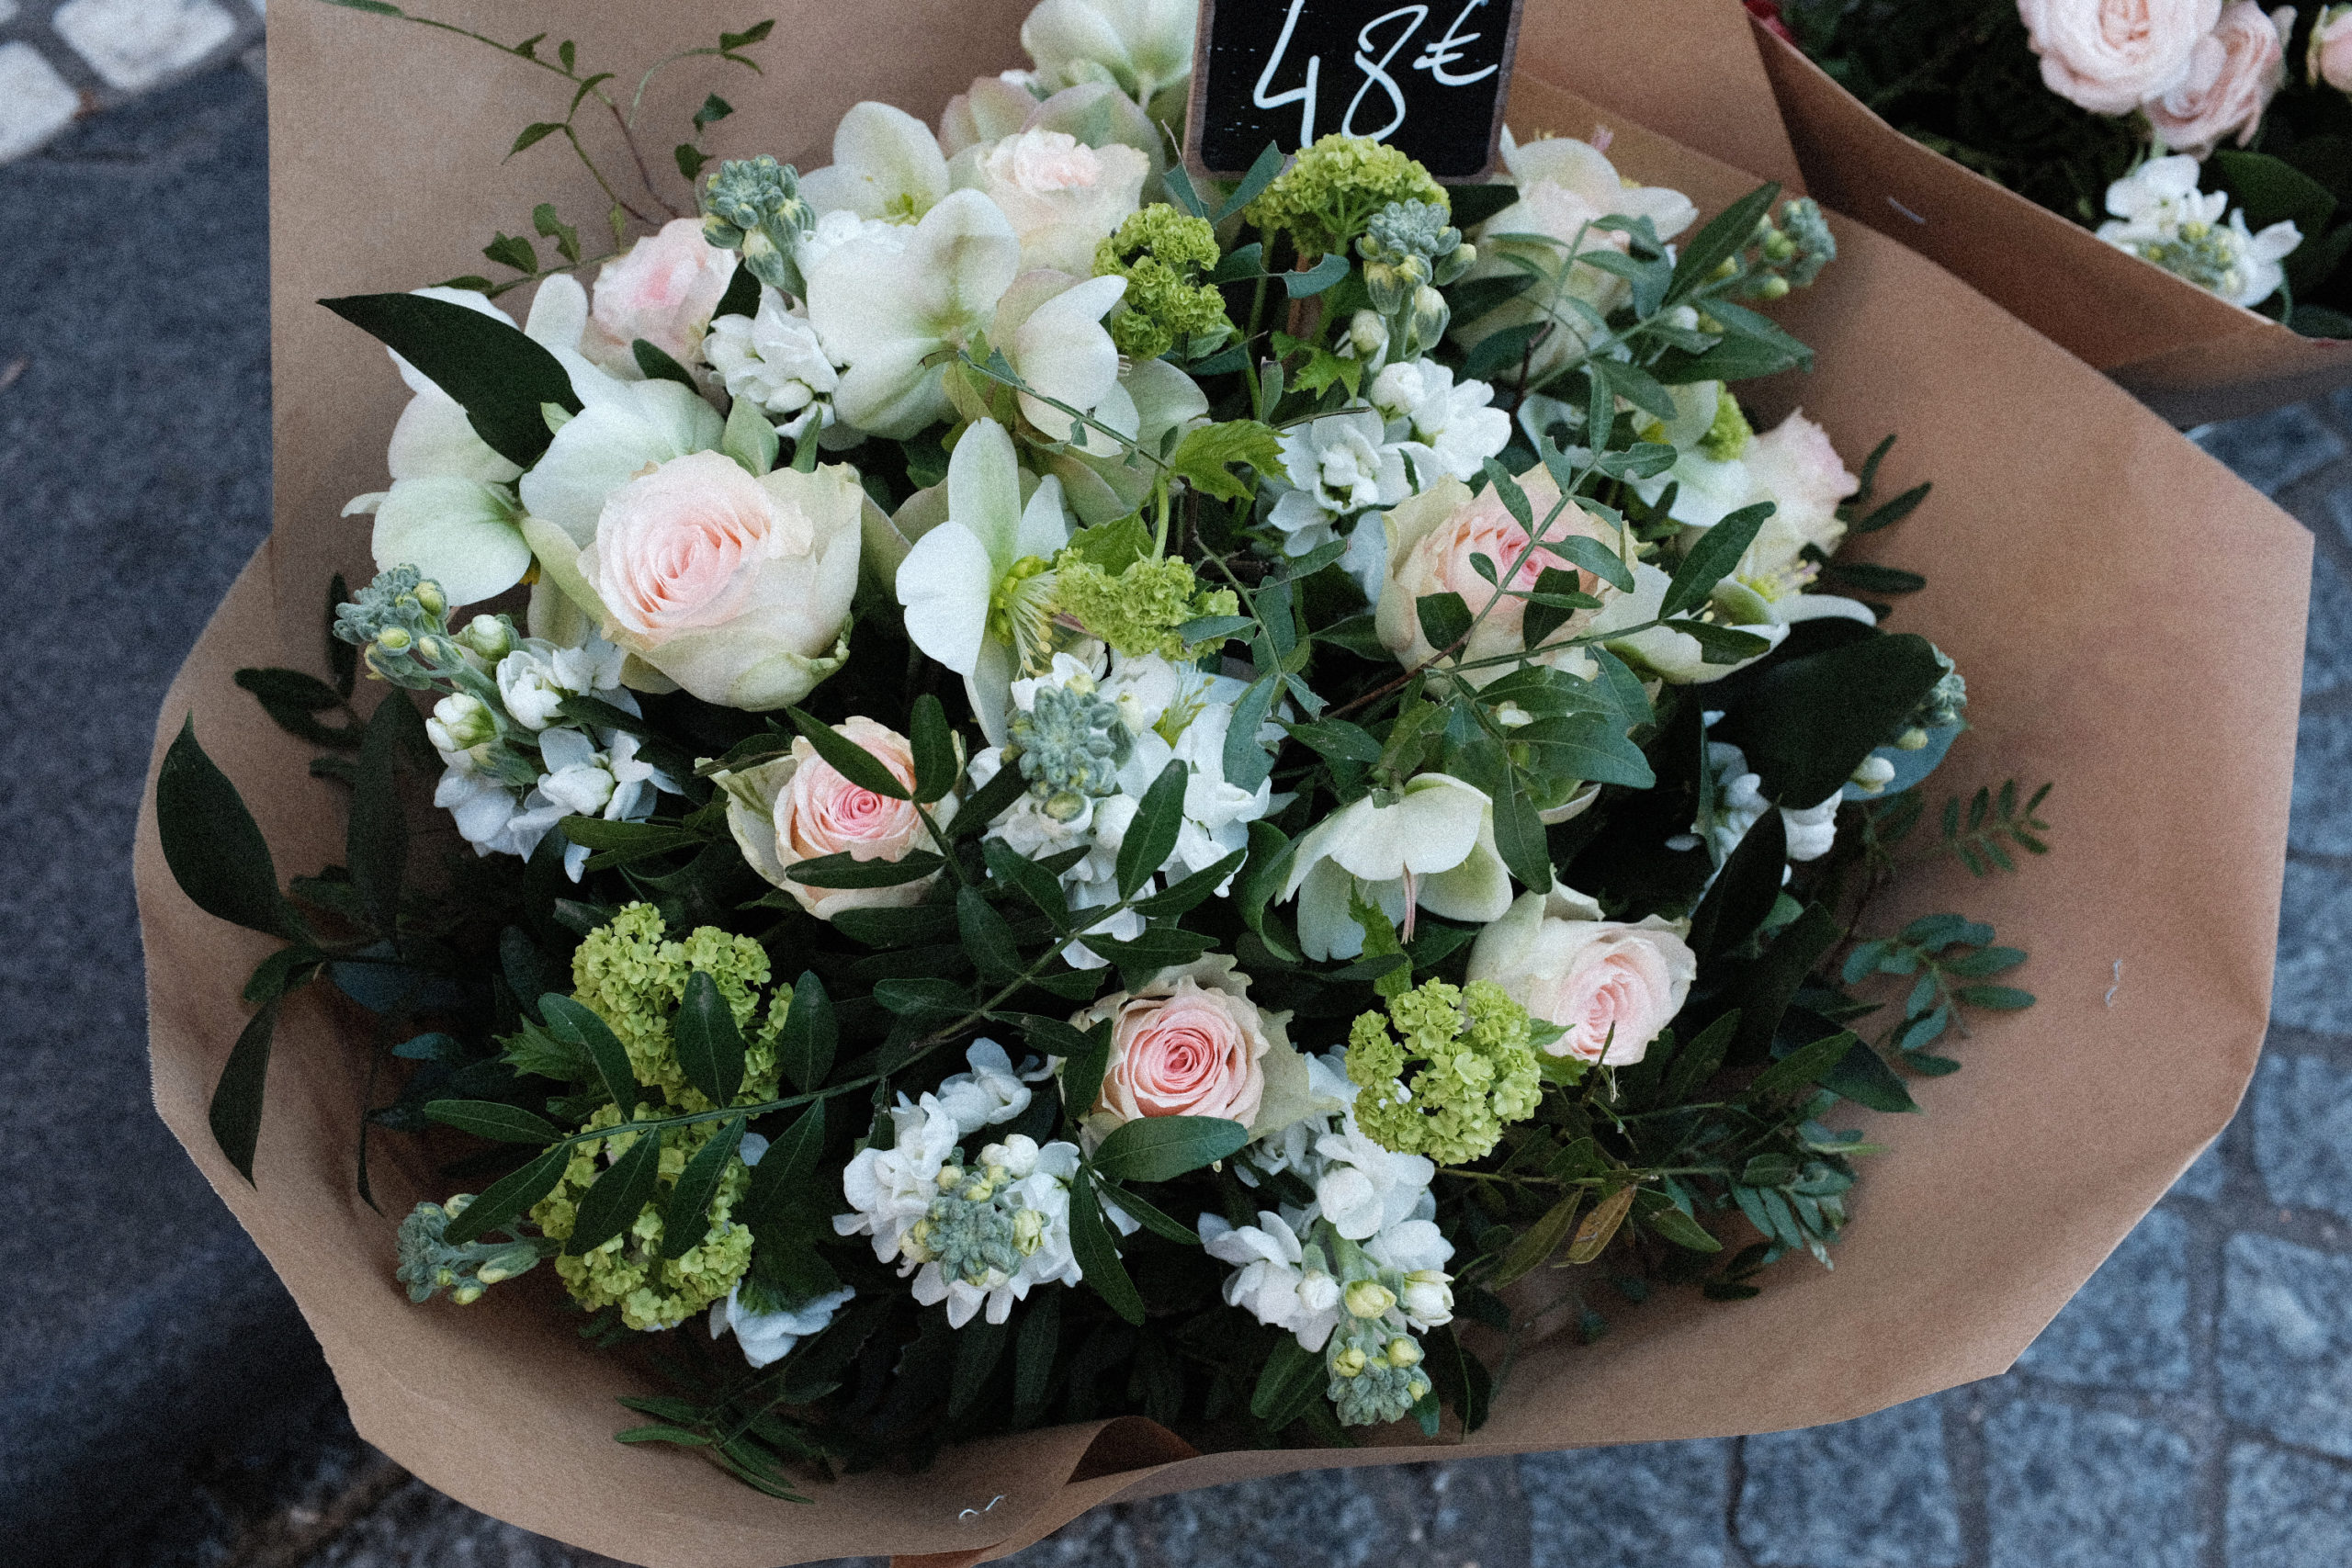 Composition de fleurs fraîches et emballage kraft (lentisque, ruscus, viburnum boule de neige, petites roses, giroflées, hellébores), valeur 48€